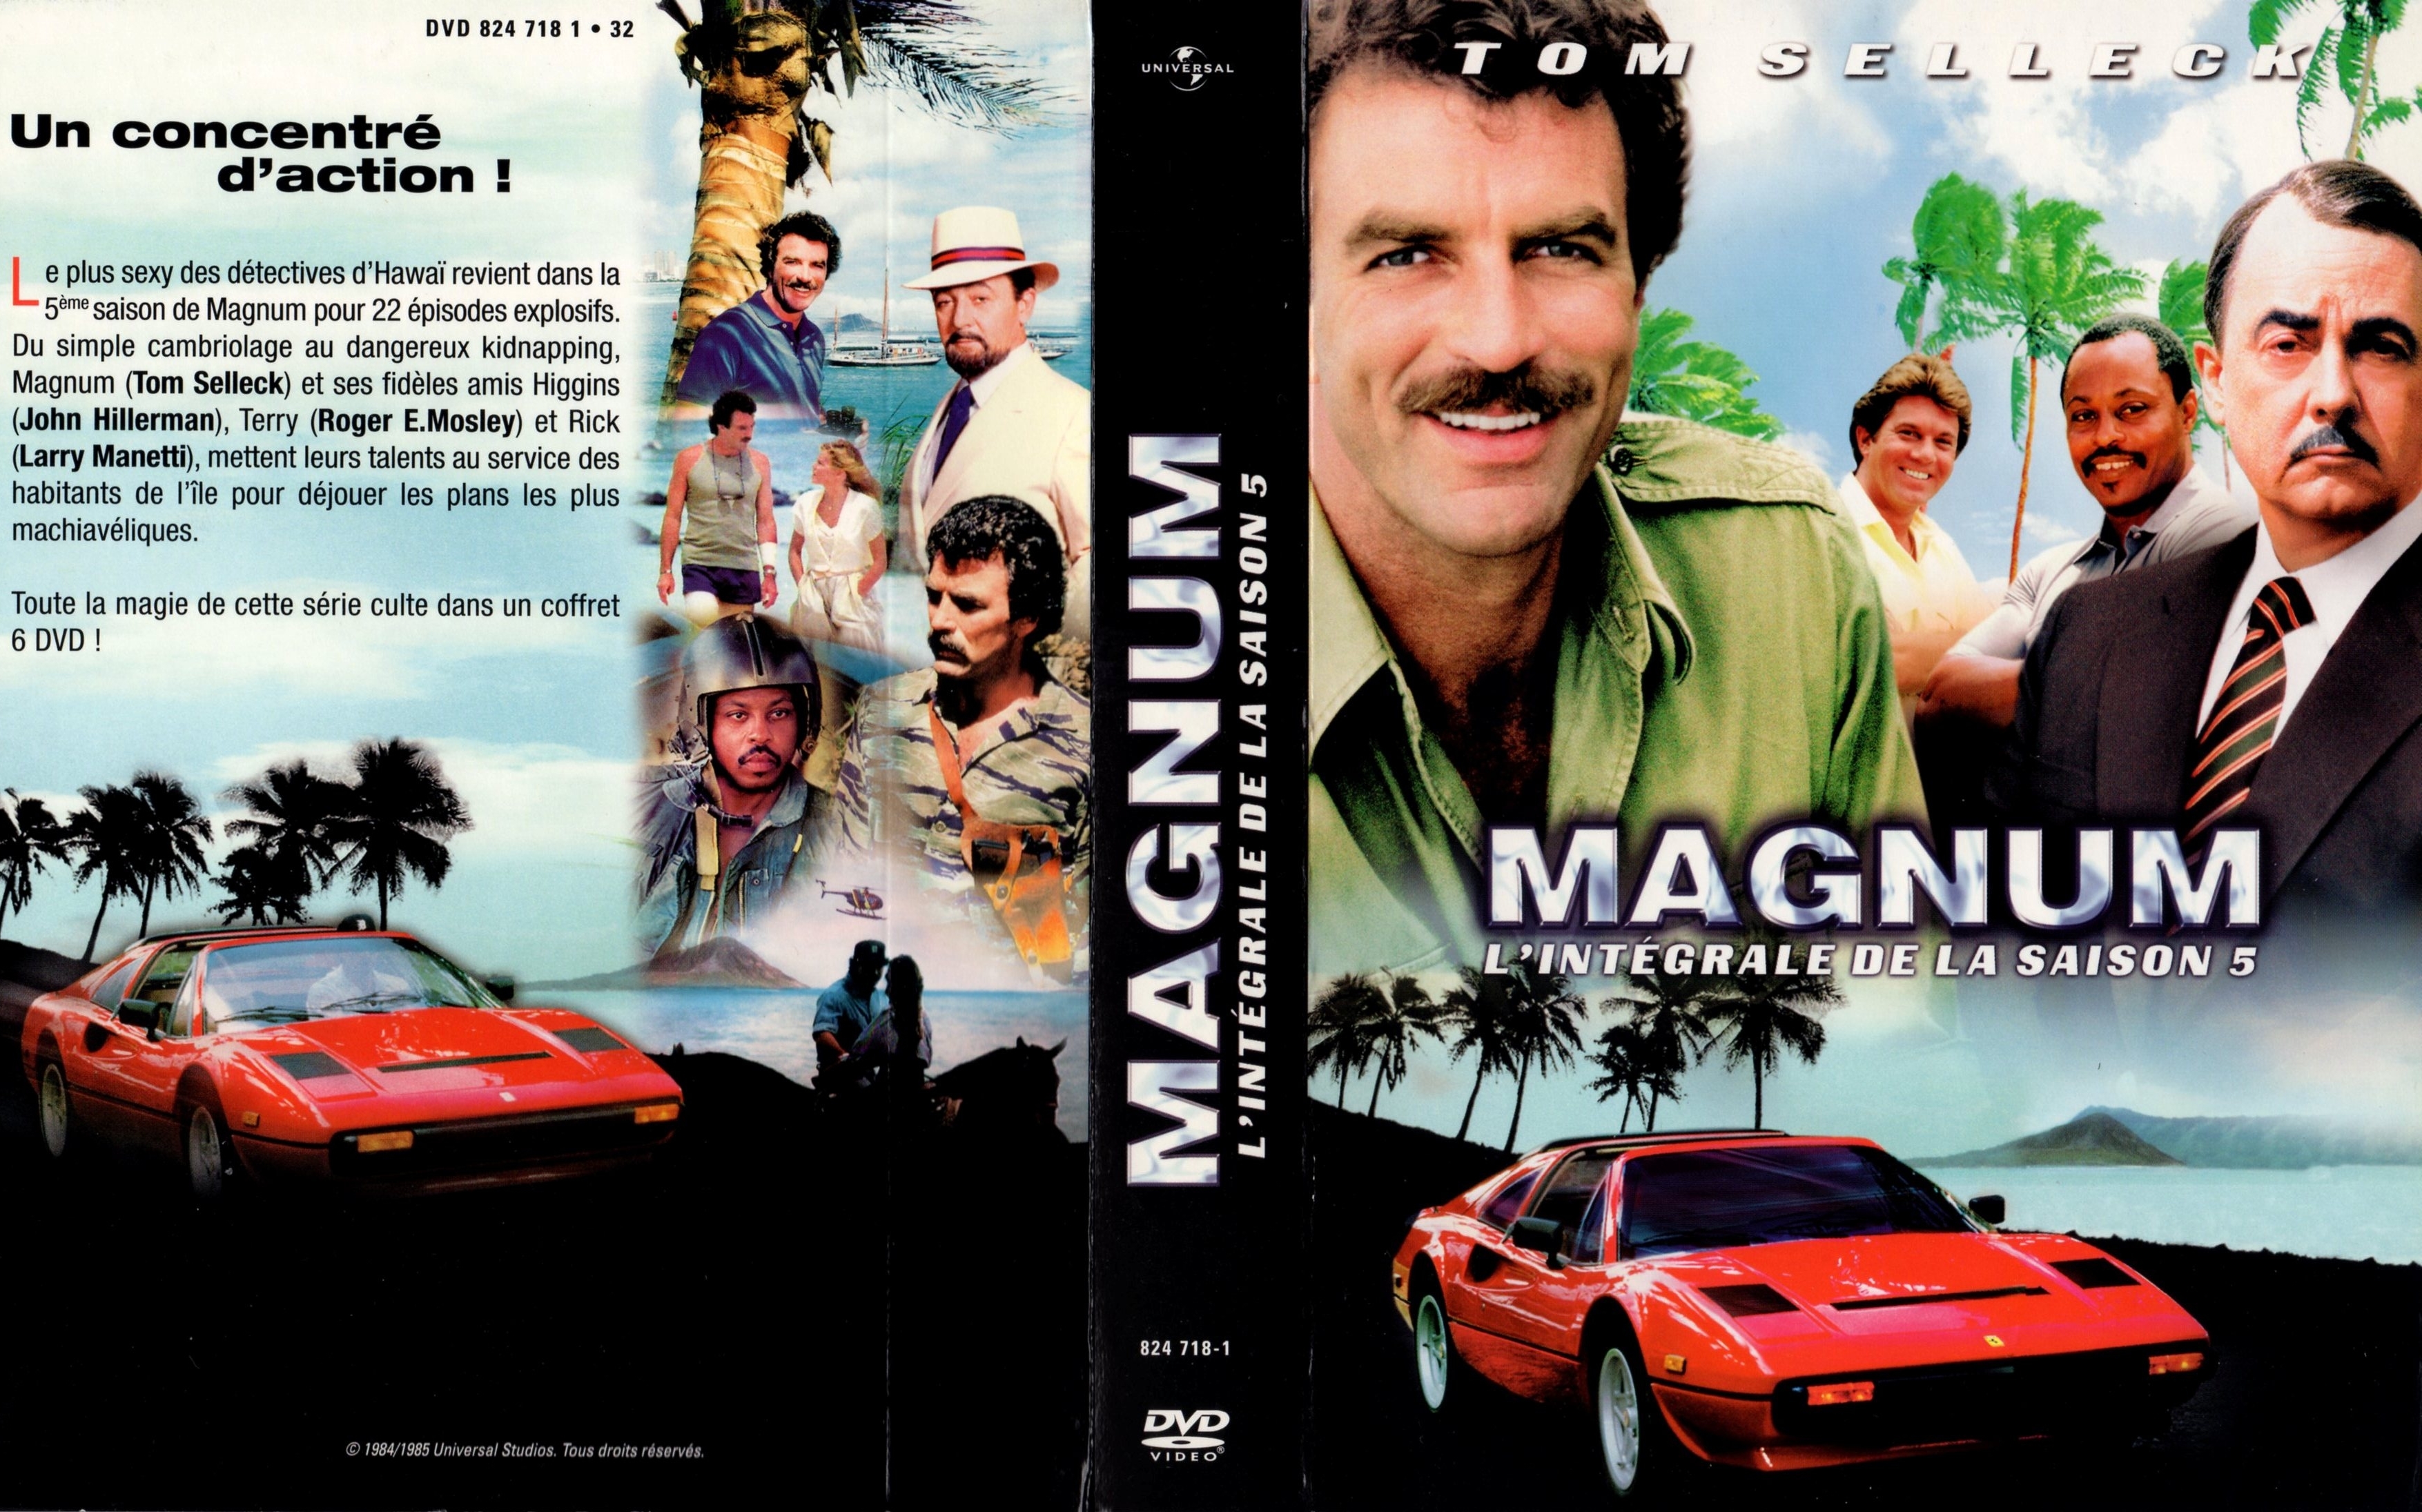 Jaquette DVD de Magnum Saison 5 COFFRET v2 - Cinéma Passion - Is There A Season 5 Of Magnum Pi